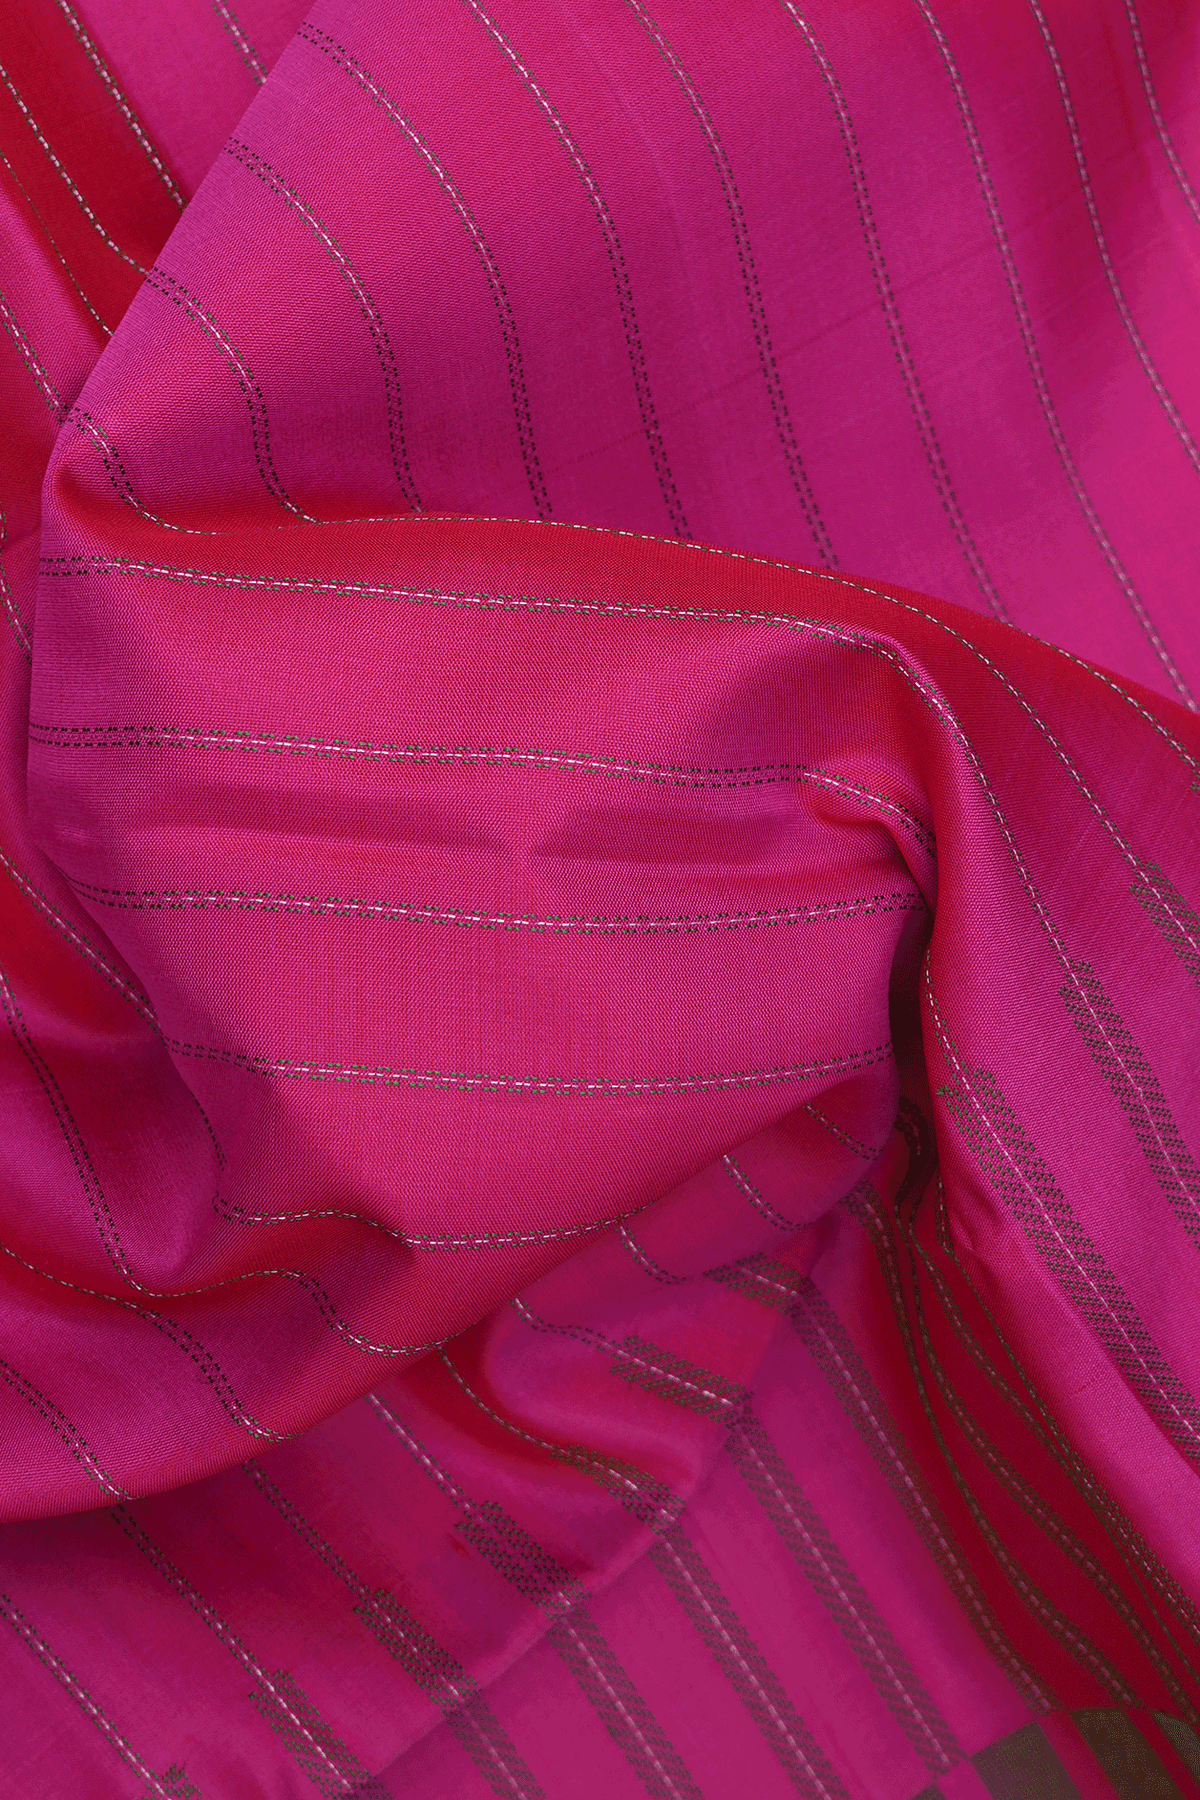 Stripes Threadwork Design Magenta Soft Silk Saree